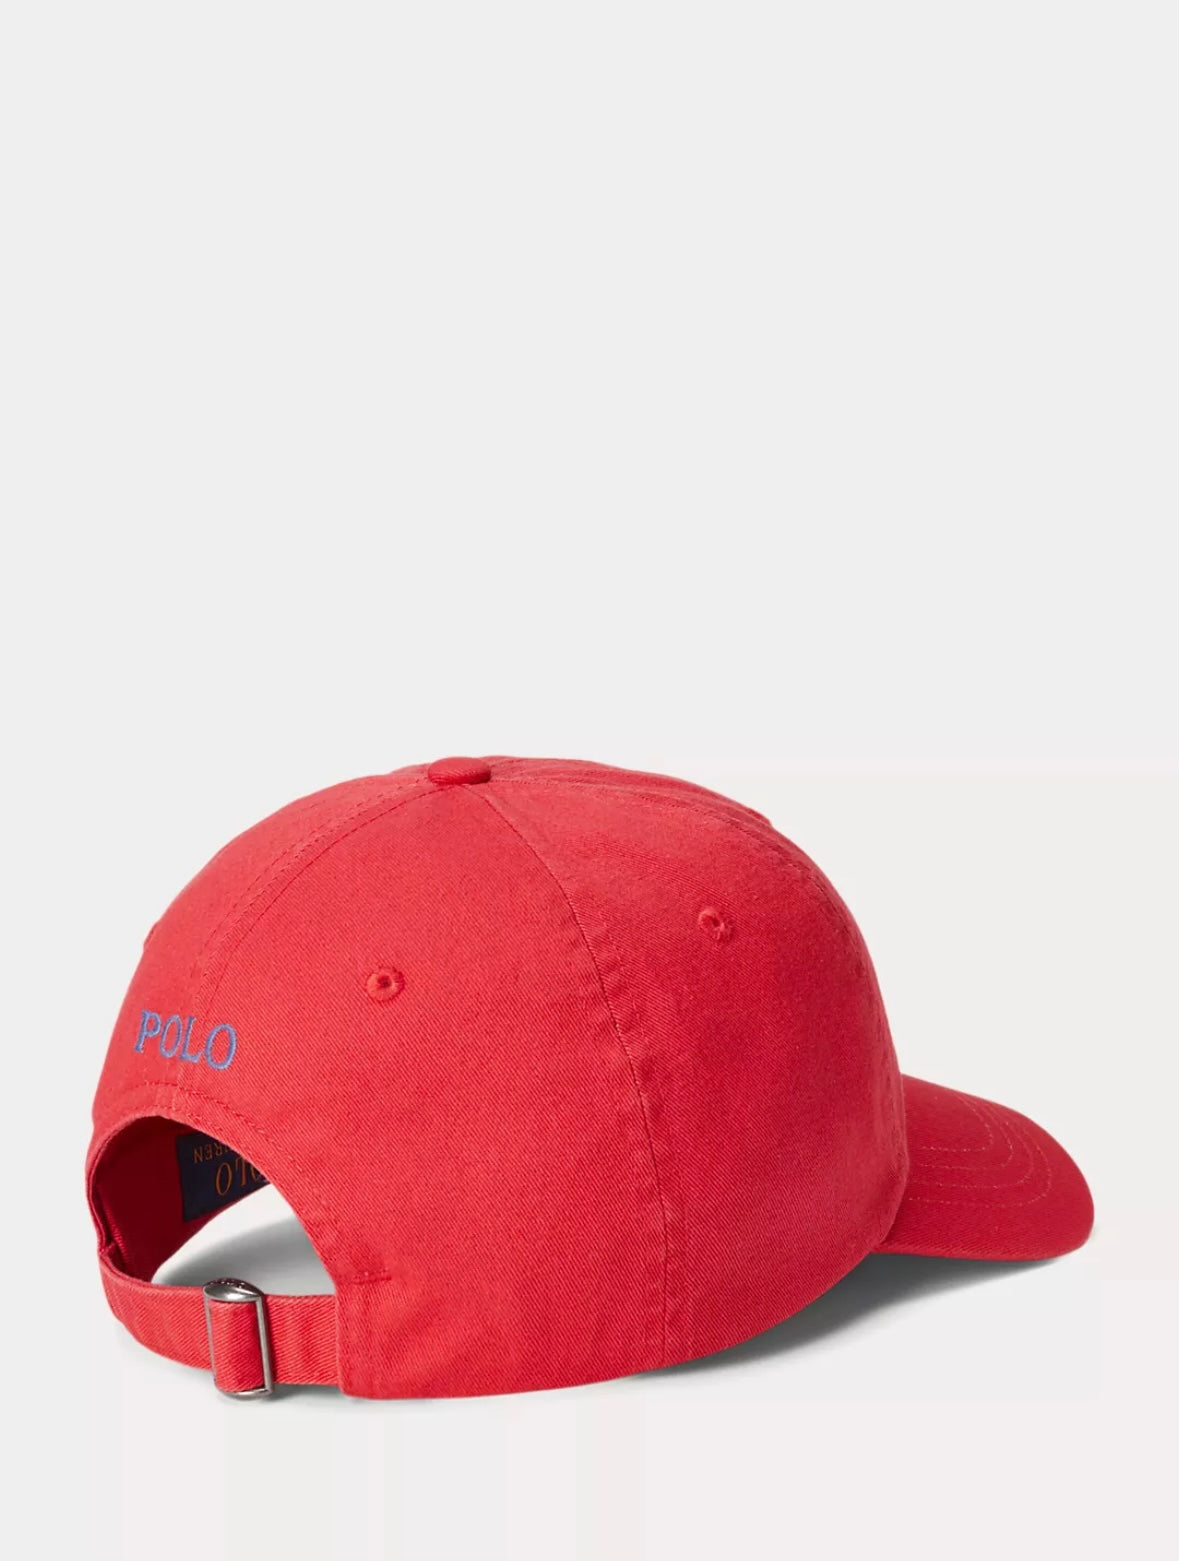 Polo Ralph Lauren caps - Post Red